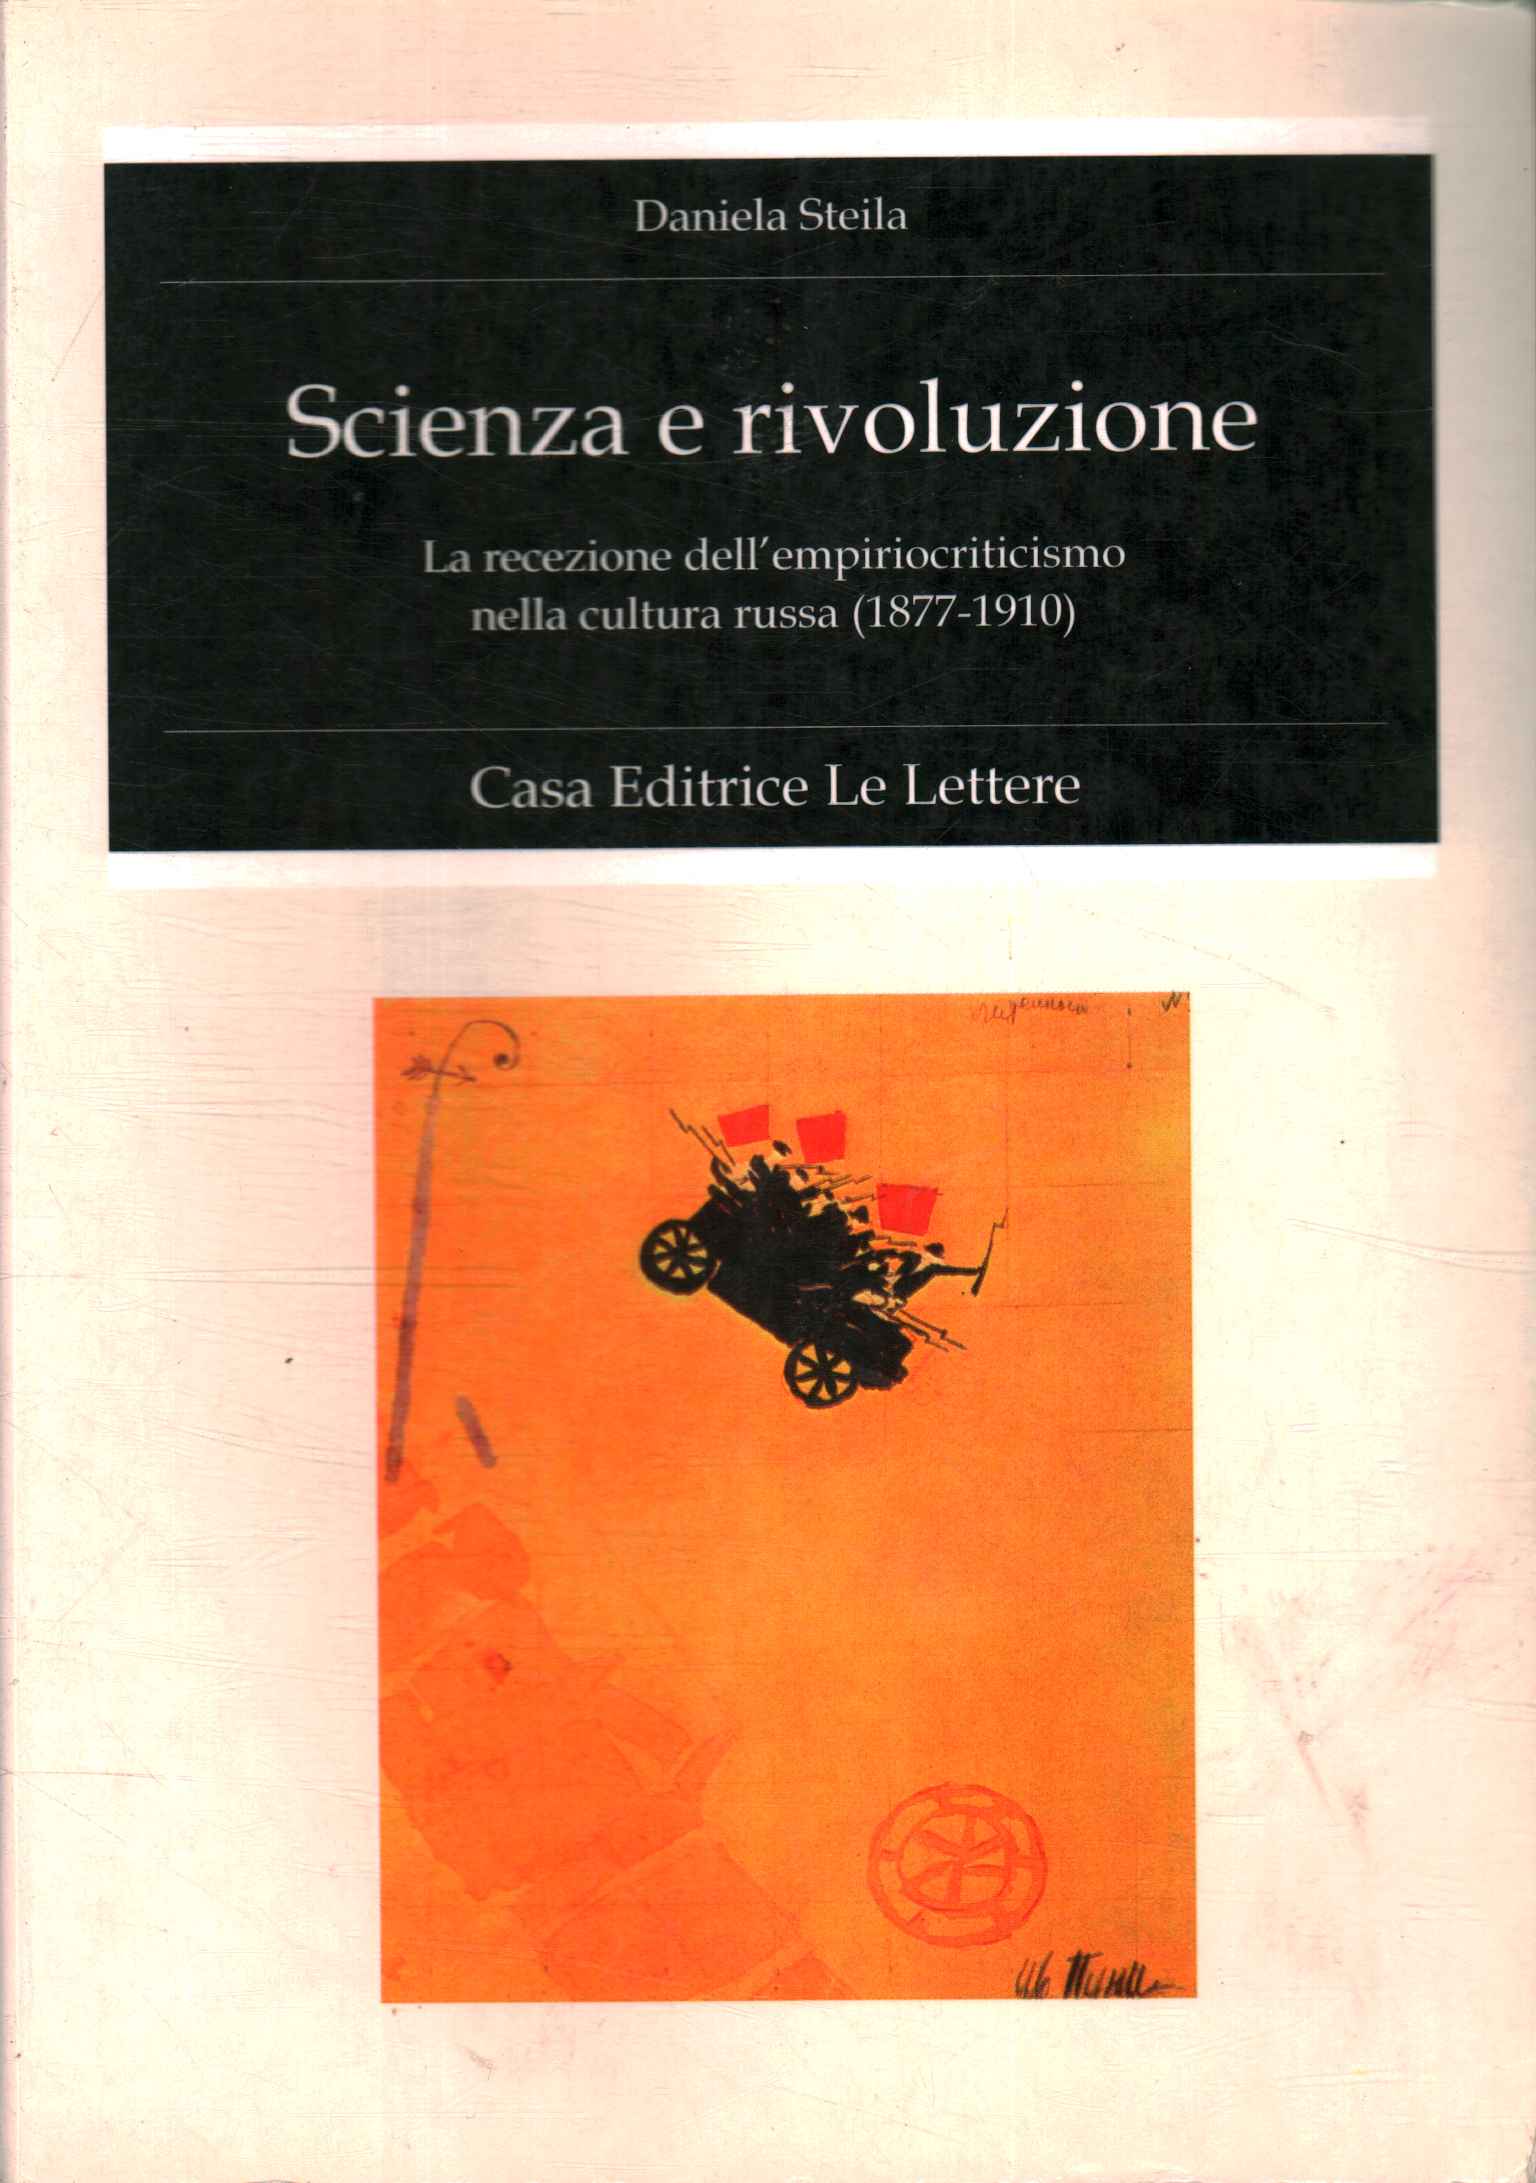 Wissenschaft und Revolution